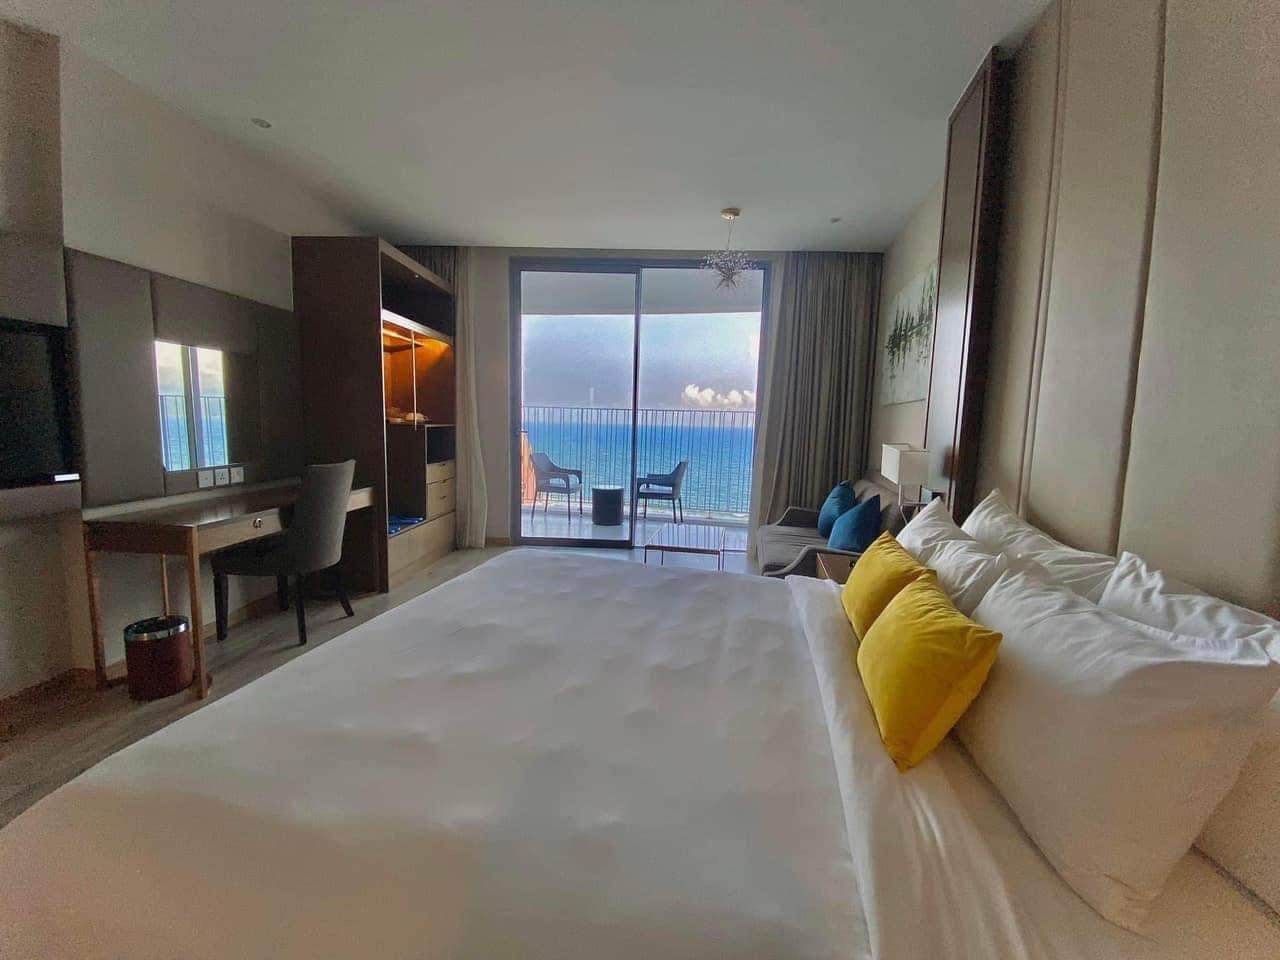 (NHẬN) Booking NGÀY căn hộ Panorama Nha Trang, Giá Chỉ từ 600.000 vnd/ngày 4